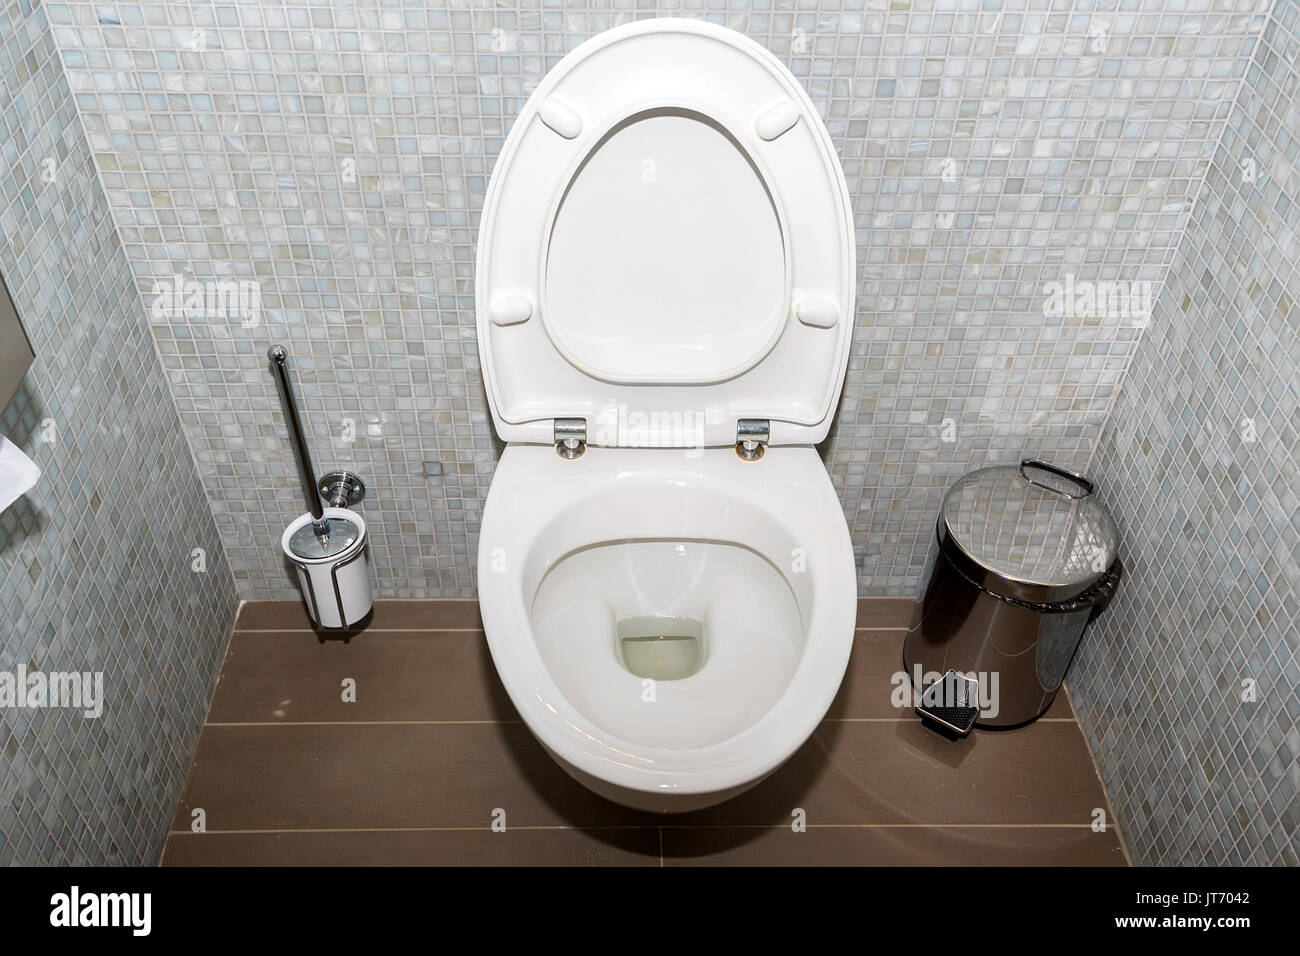 Flush Toilet Bowl Stockfoto